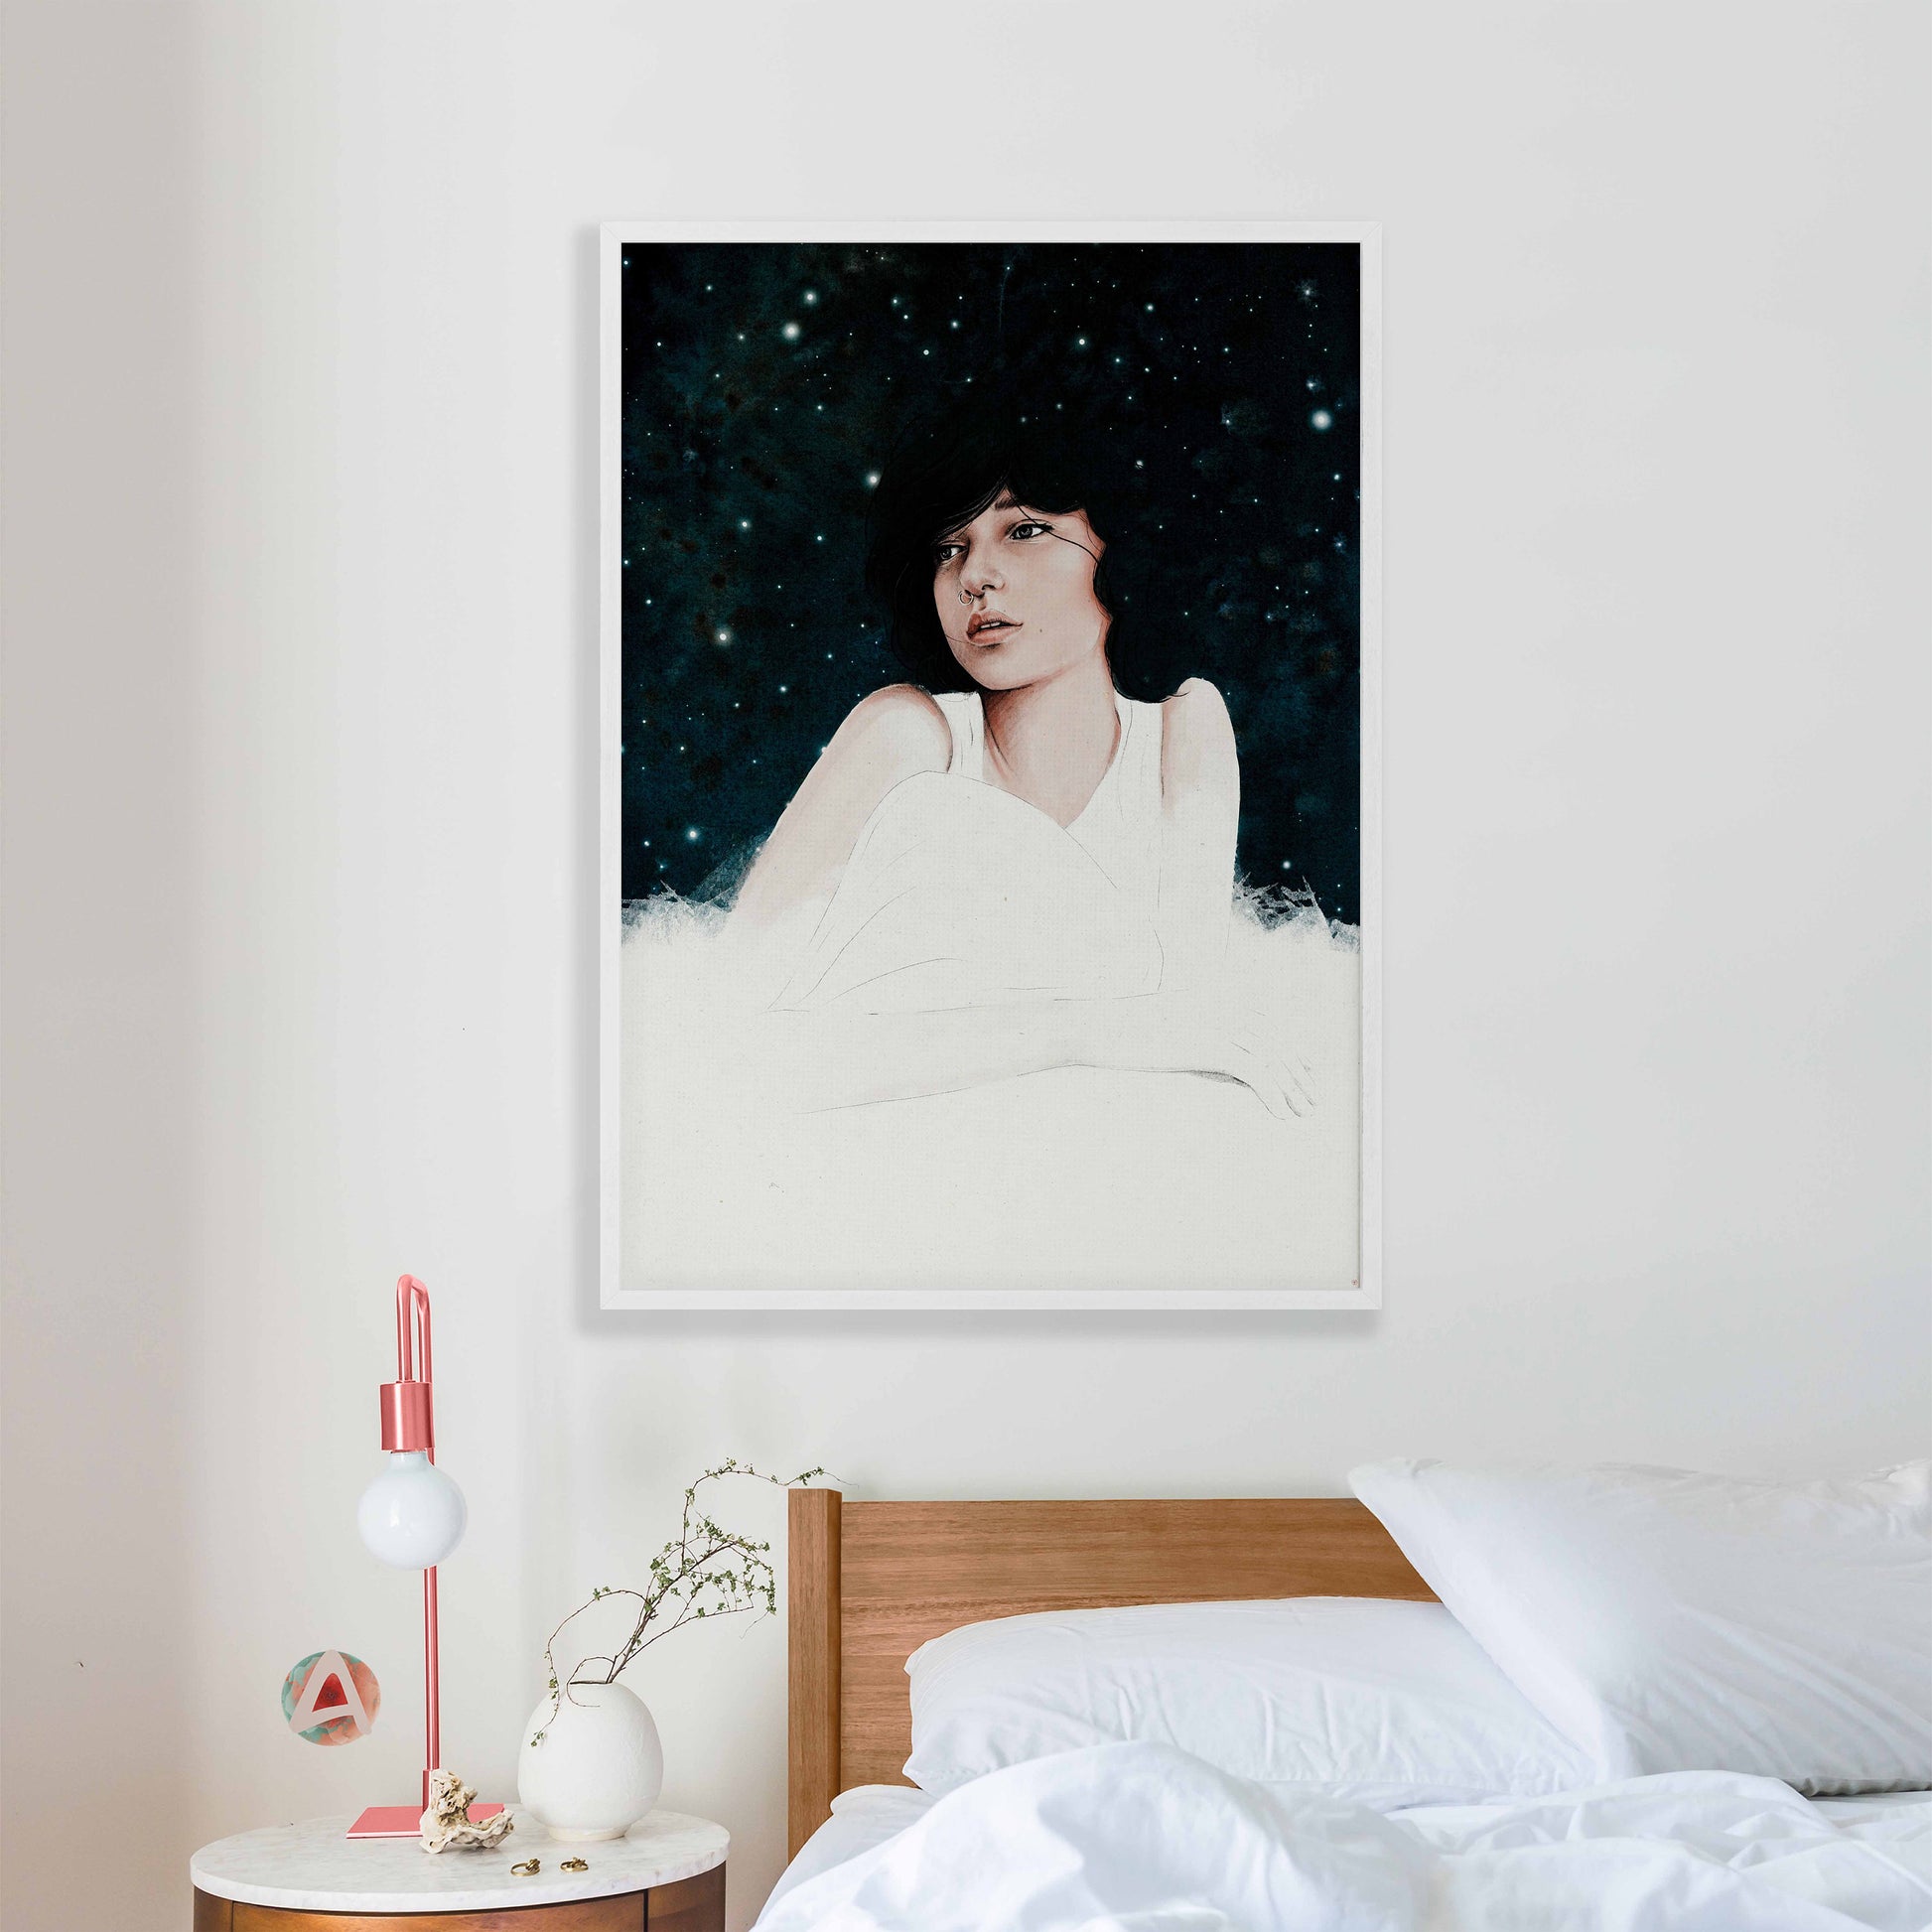 Dreamy girl art print in dark blue, pink & white in white frame mockup in bedroom